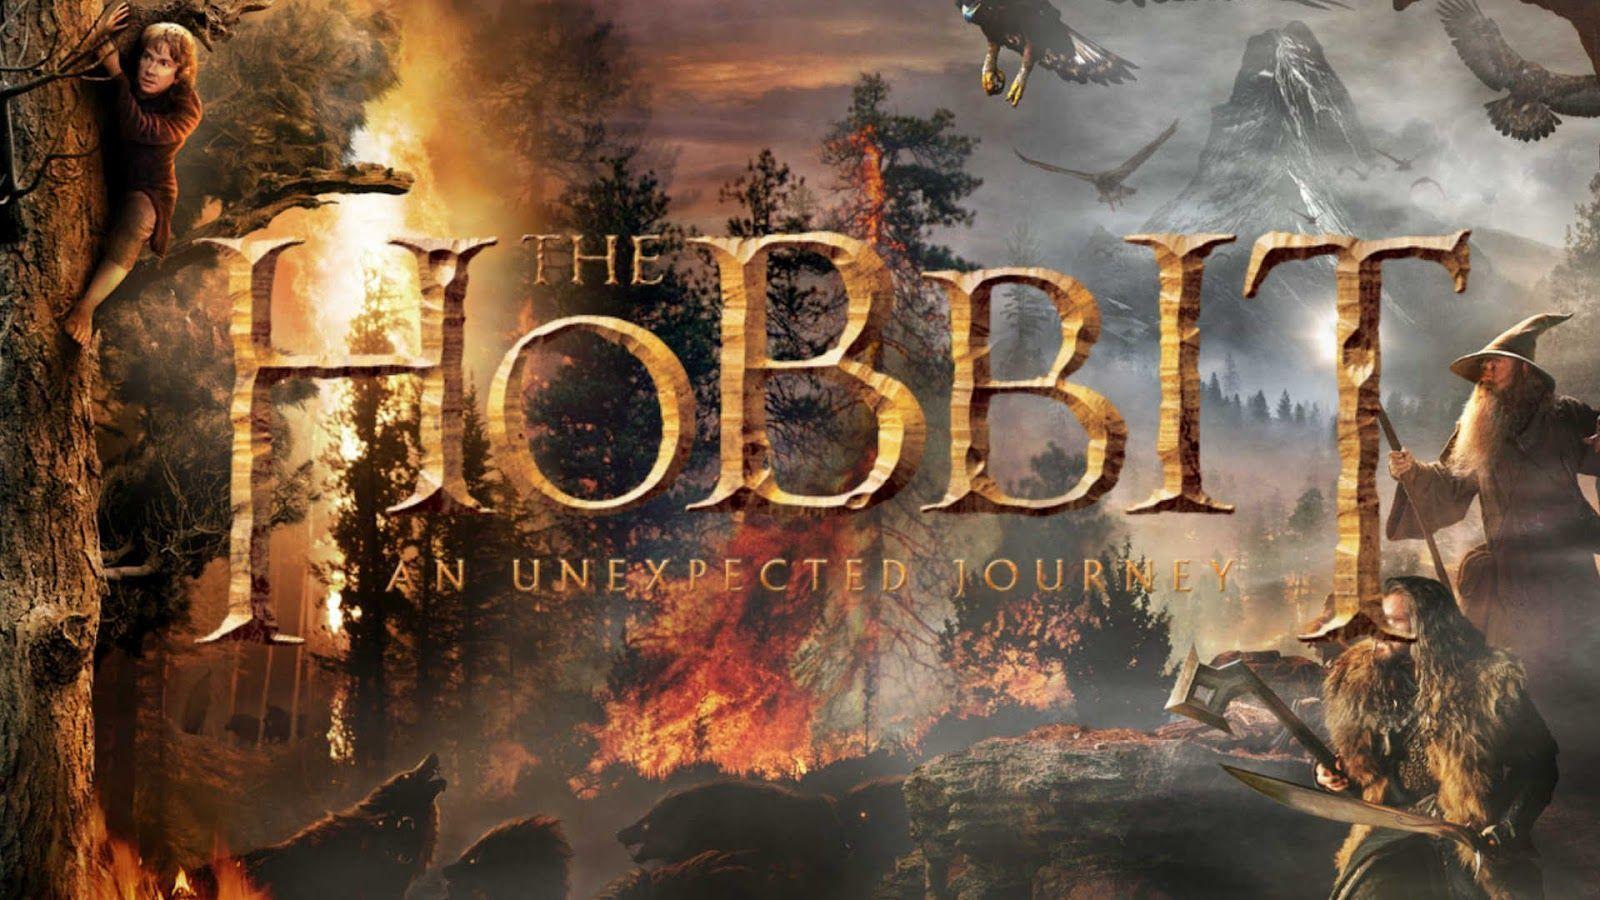 The Hobbit Desktop Wallpaper